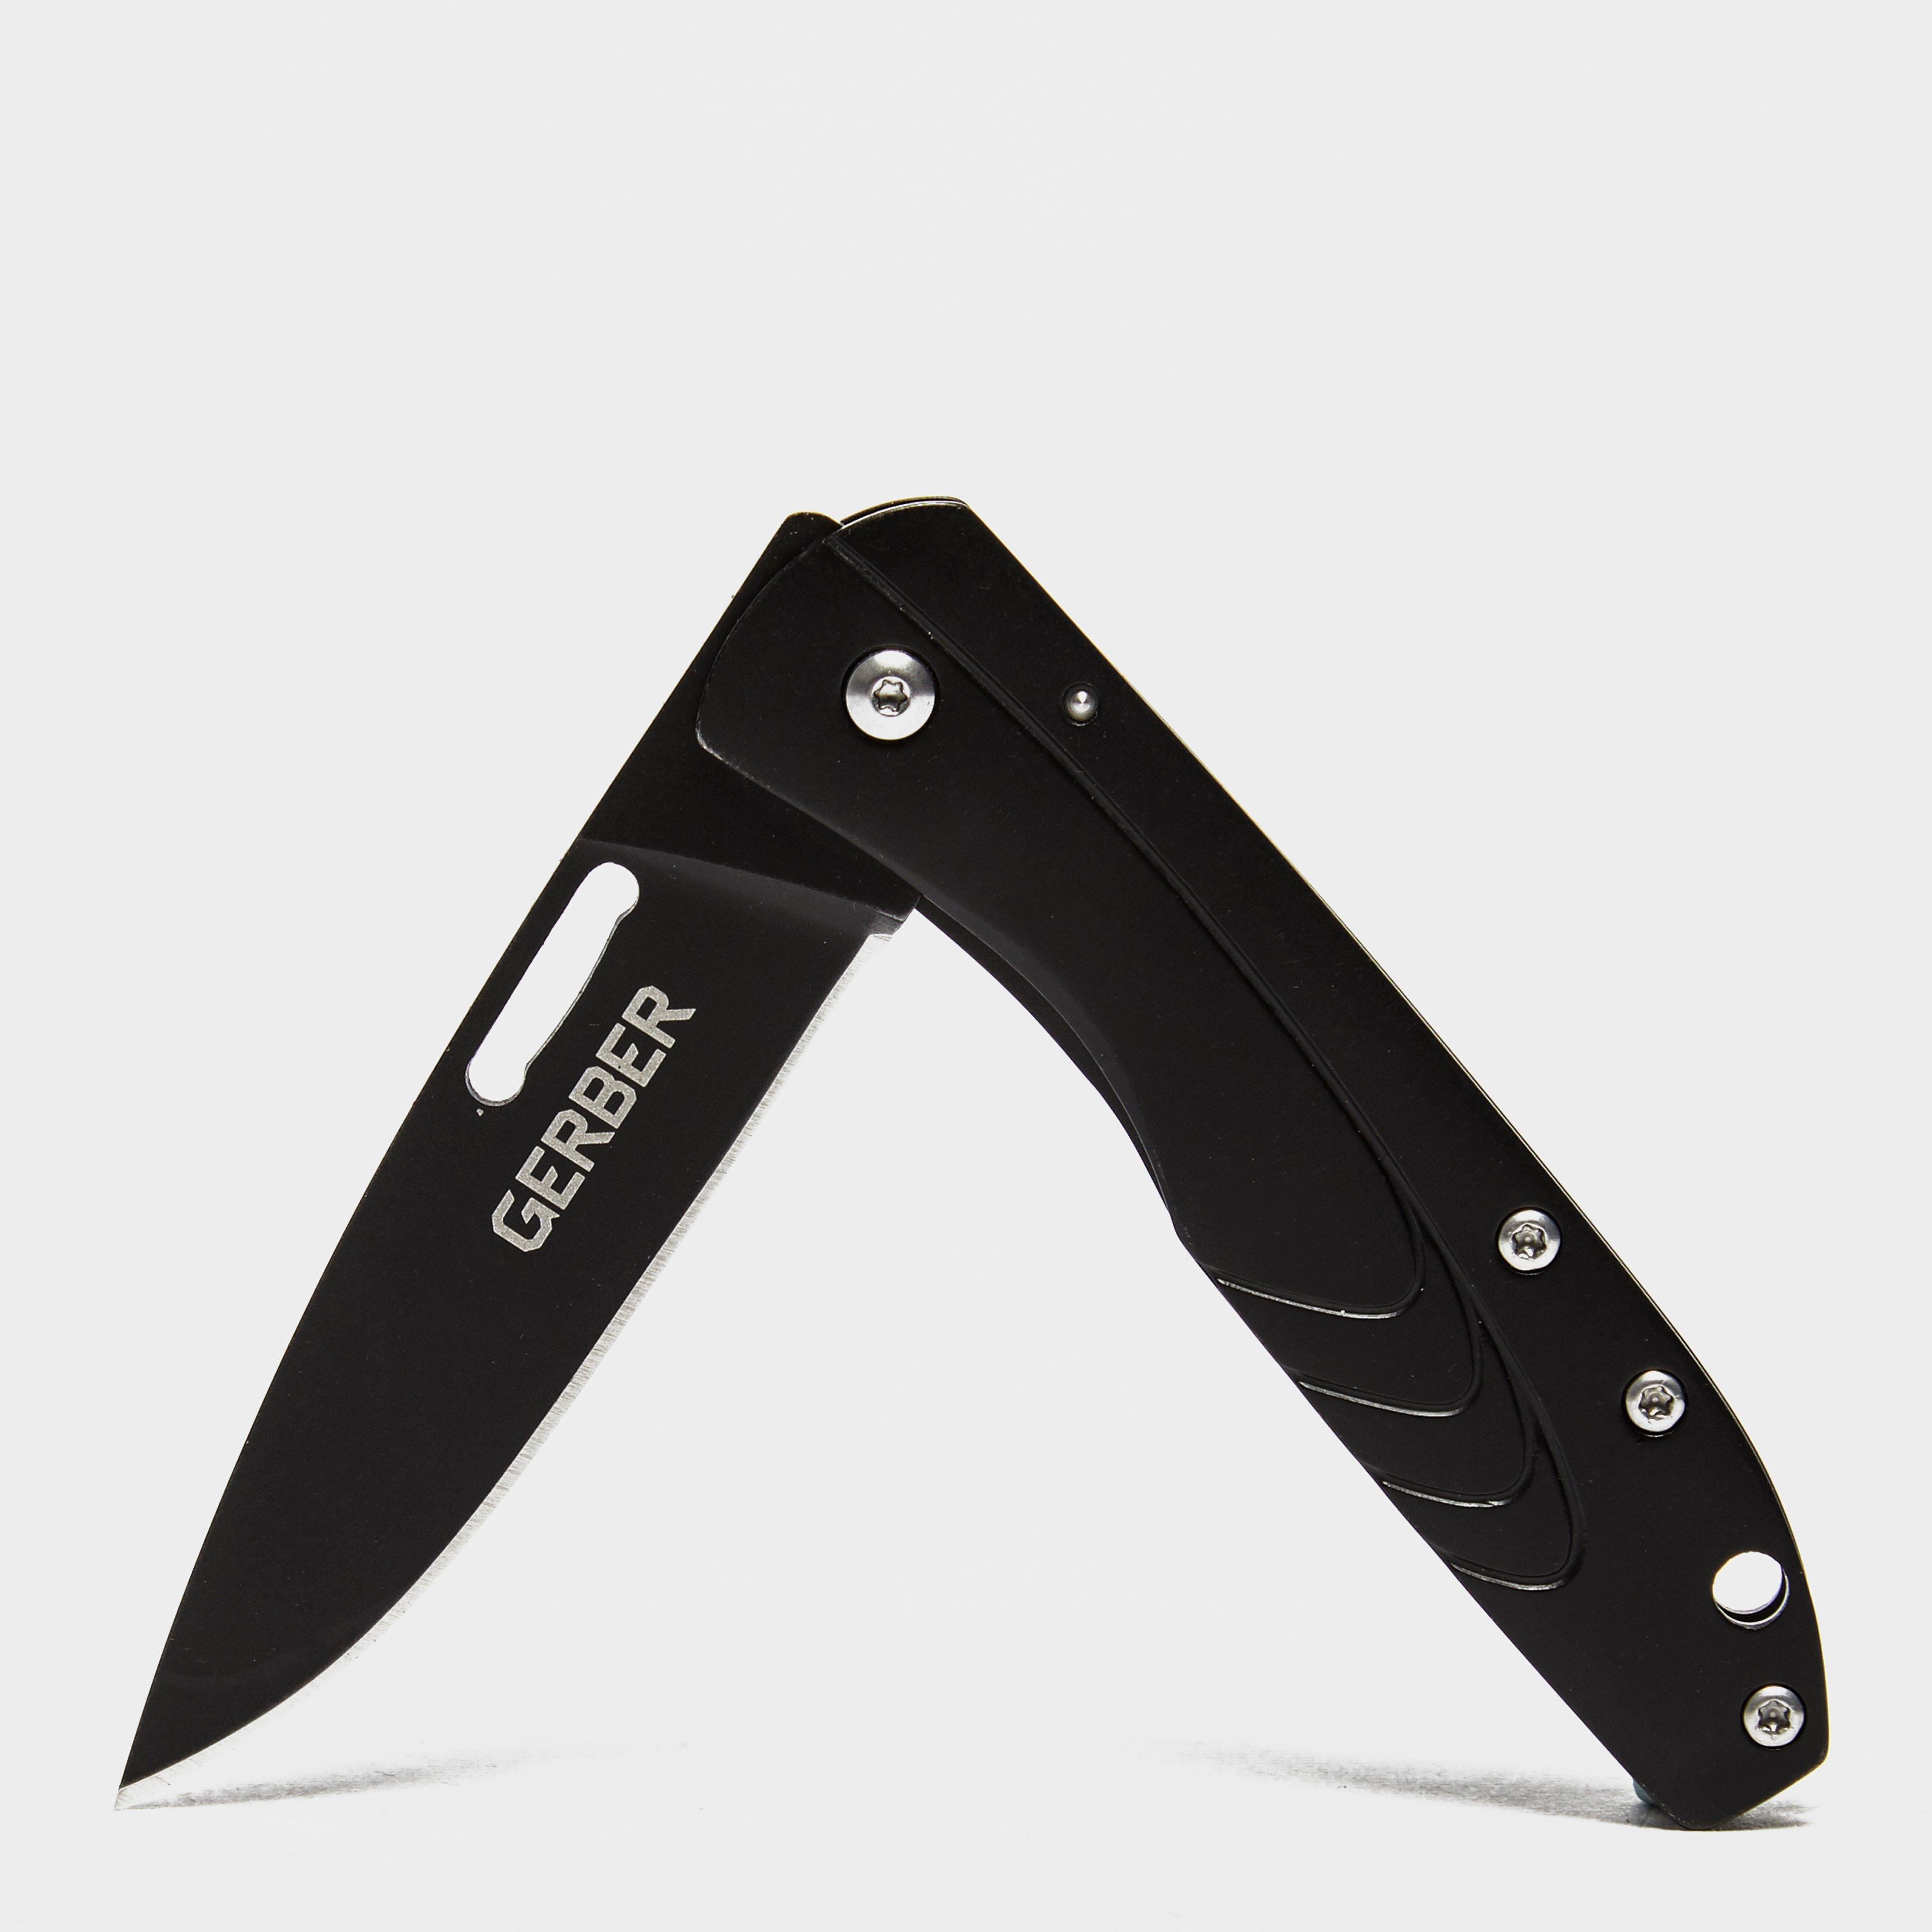 Gerber Stl 2.5 Pocket Knife - Black/knife  Black/knife